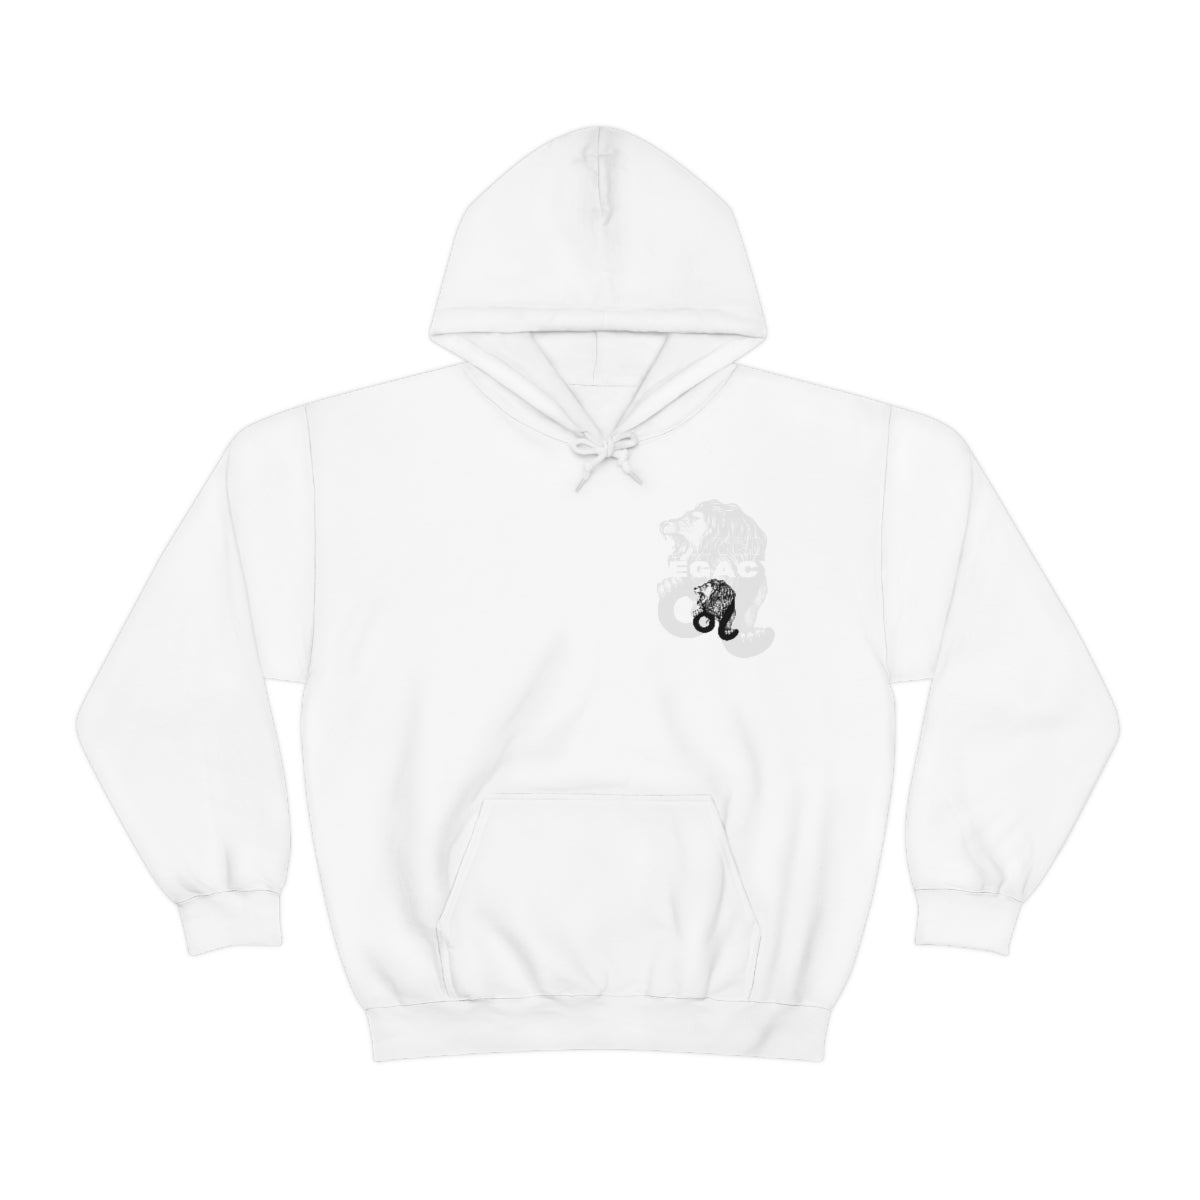 Black Legacy Hooded Sweatshirt